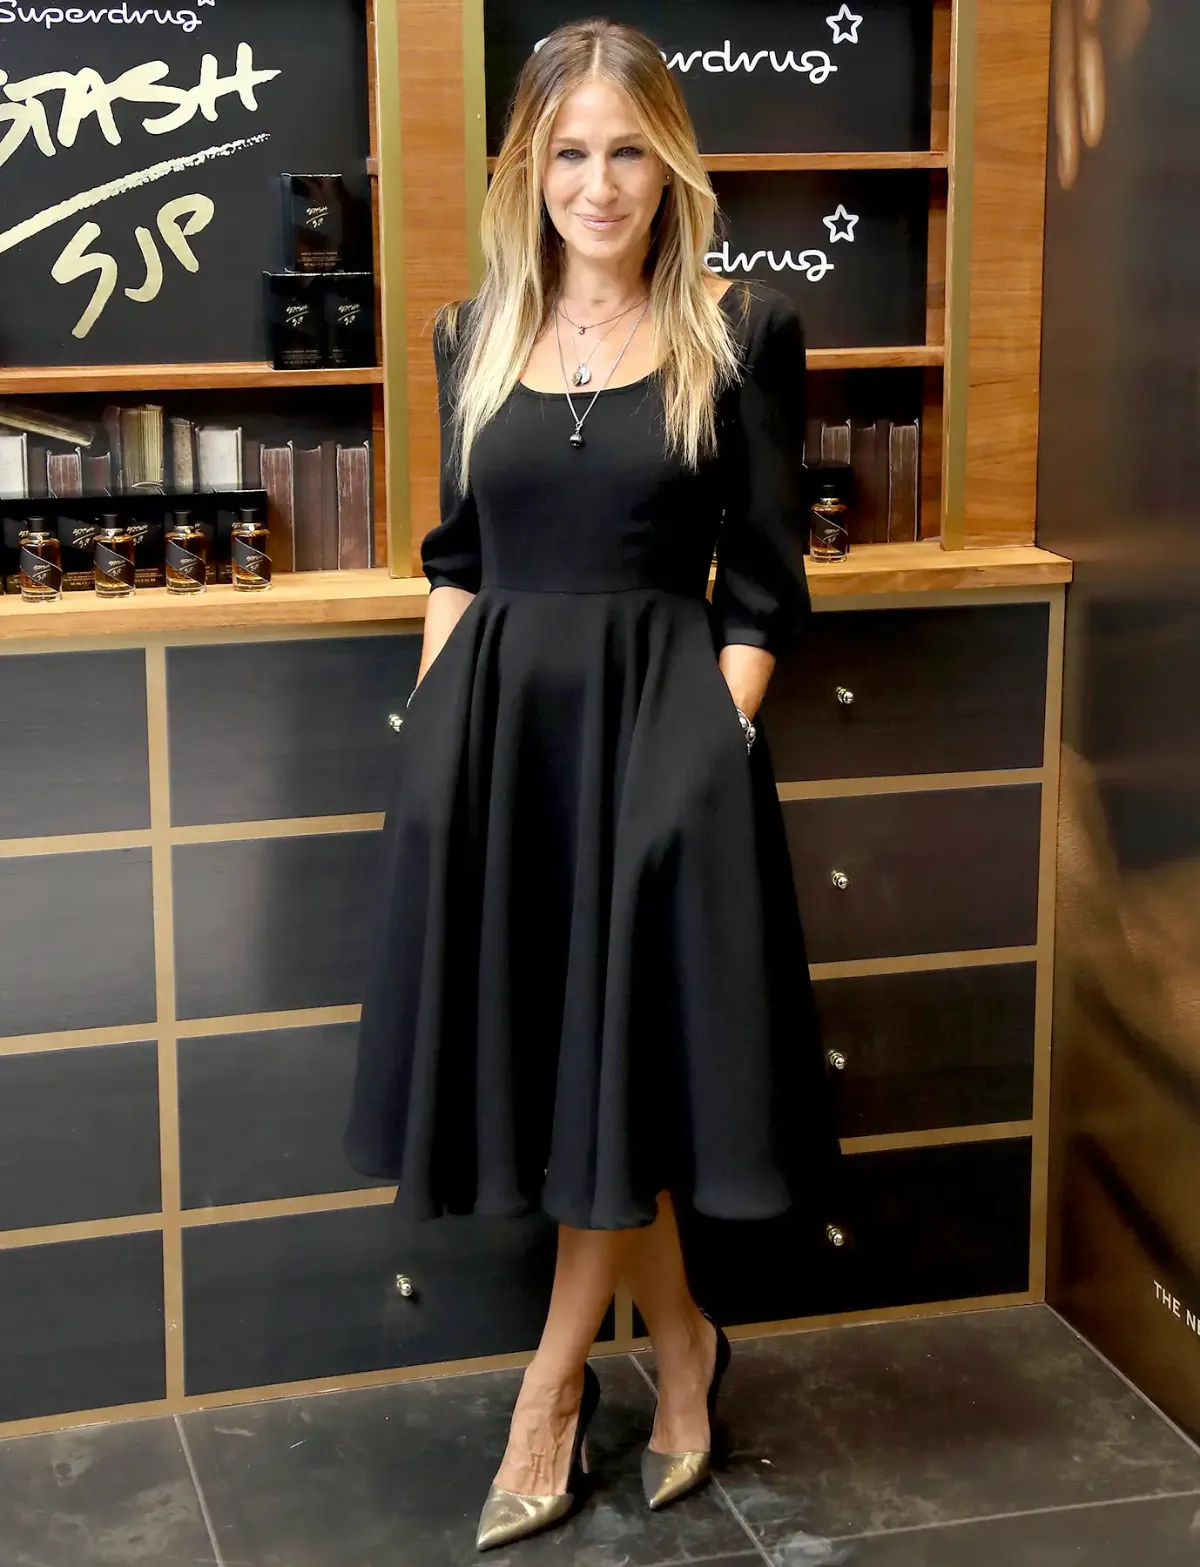 sarah jessica parker avec une robe noire évasée décolleté arrondi femme moderne 50 ans